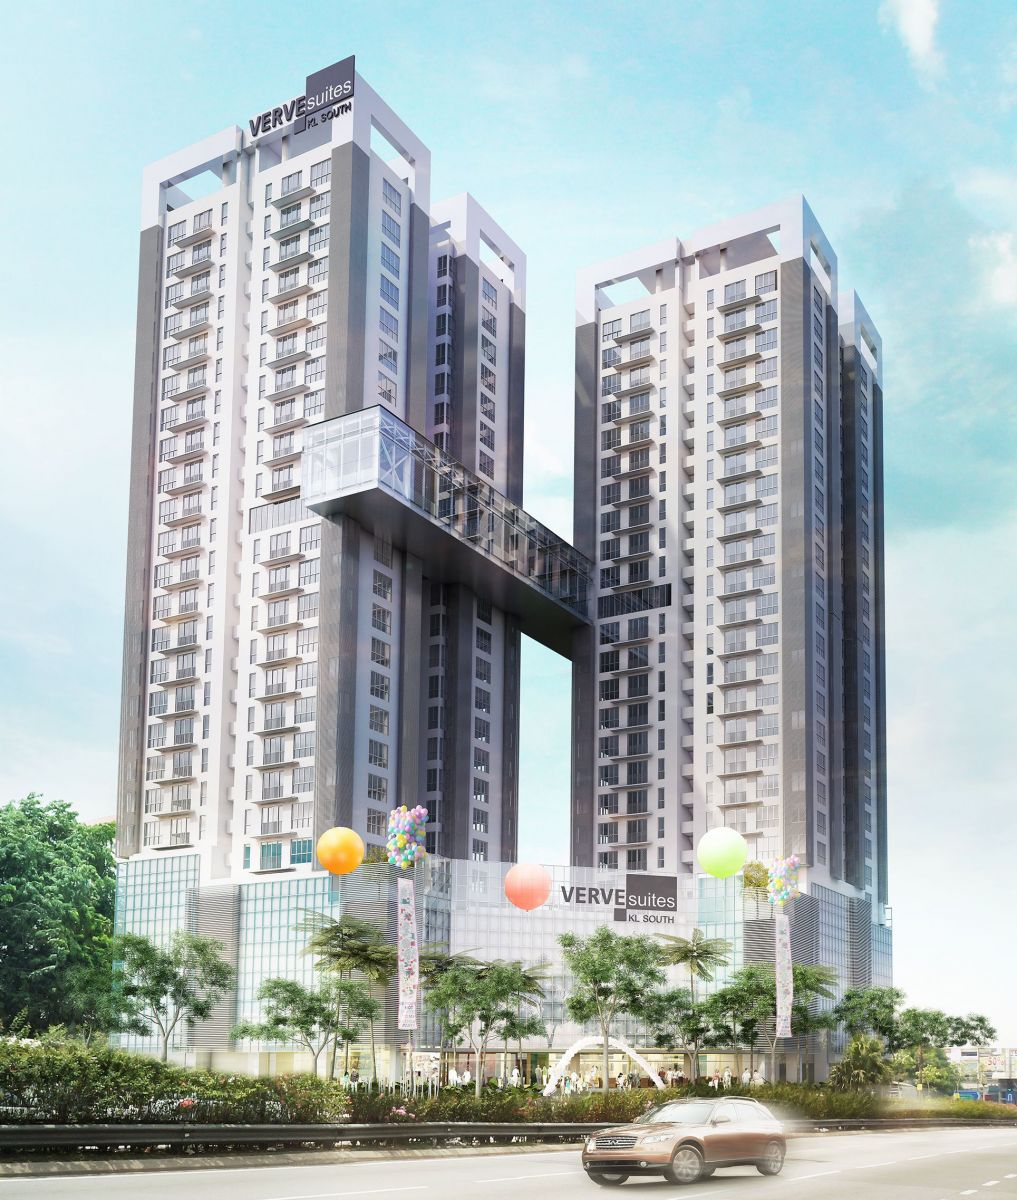 (KL) Verve Suites KL South, Old Klang Road | New Property Launch | KL